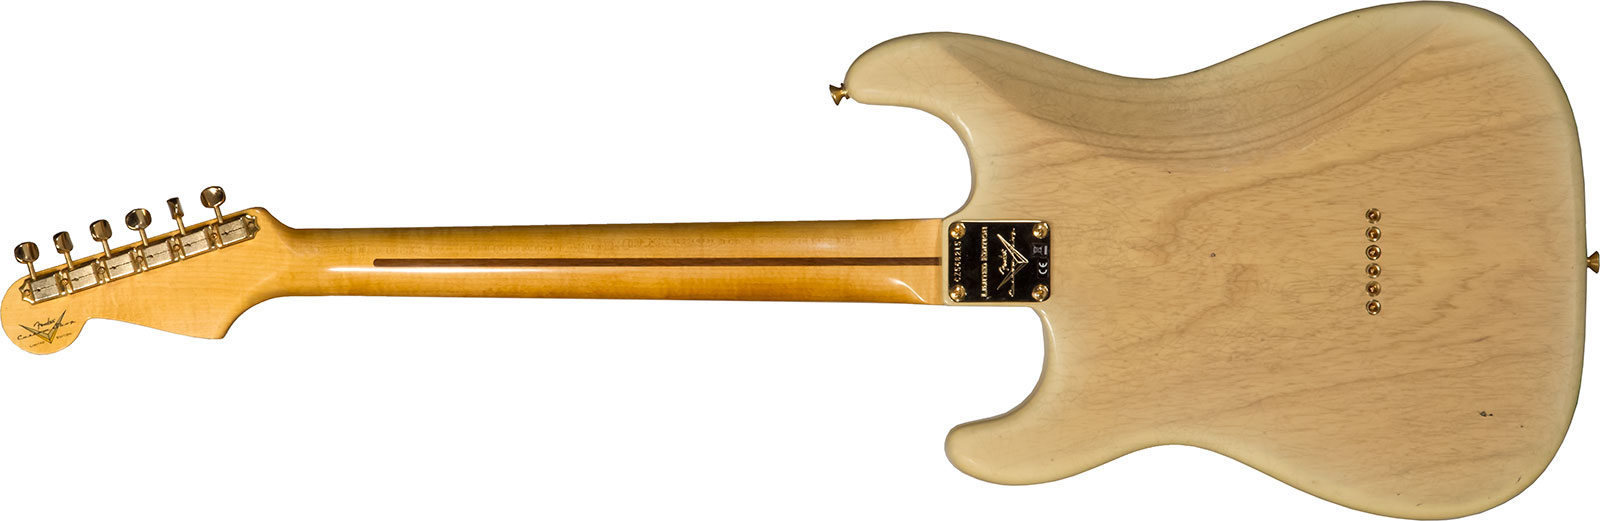 Fender Custom Shop Strat 1955 Hardtail Gold Hardware 3s Trem Mn #cz568215 - Journeyman Relic Natural Blonde - Elektrische gitaar in Str-vorm - Variati